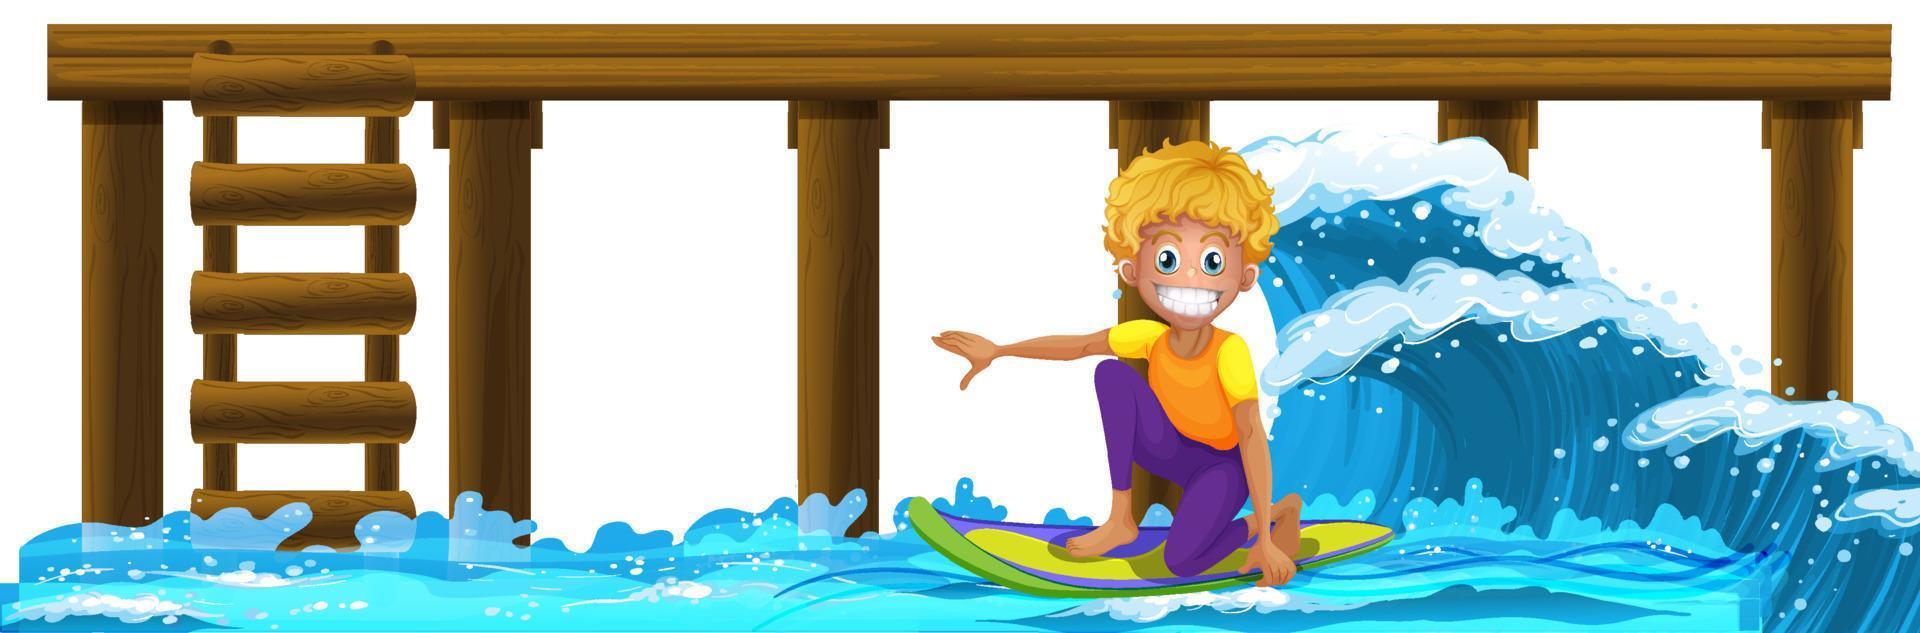 houten pier met een jongen op surfplank vector